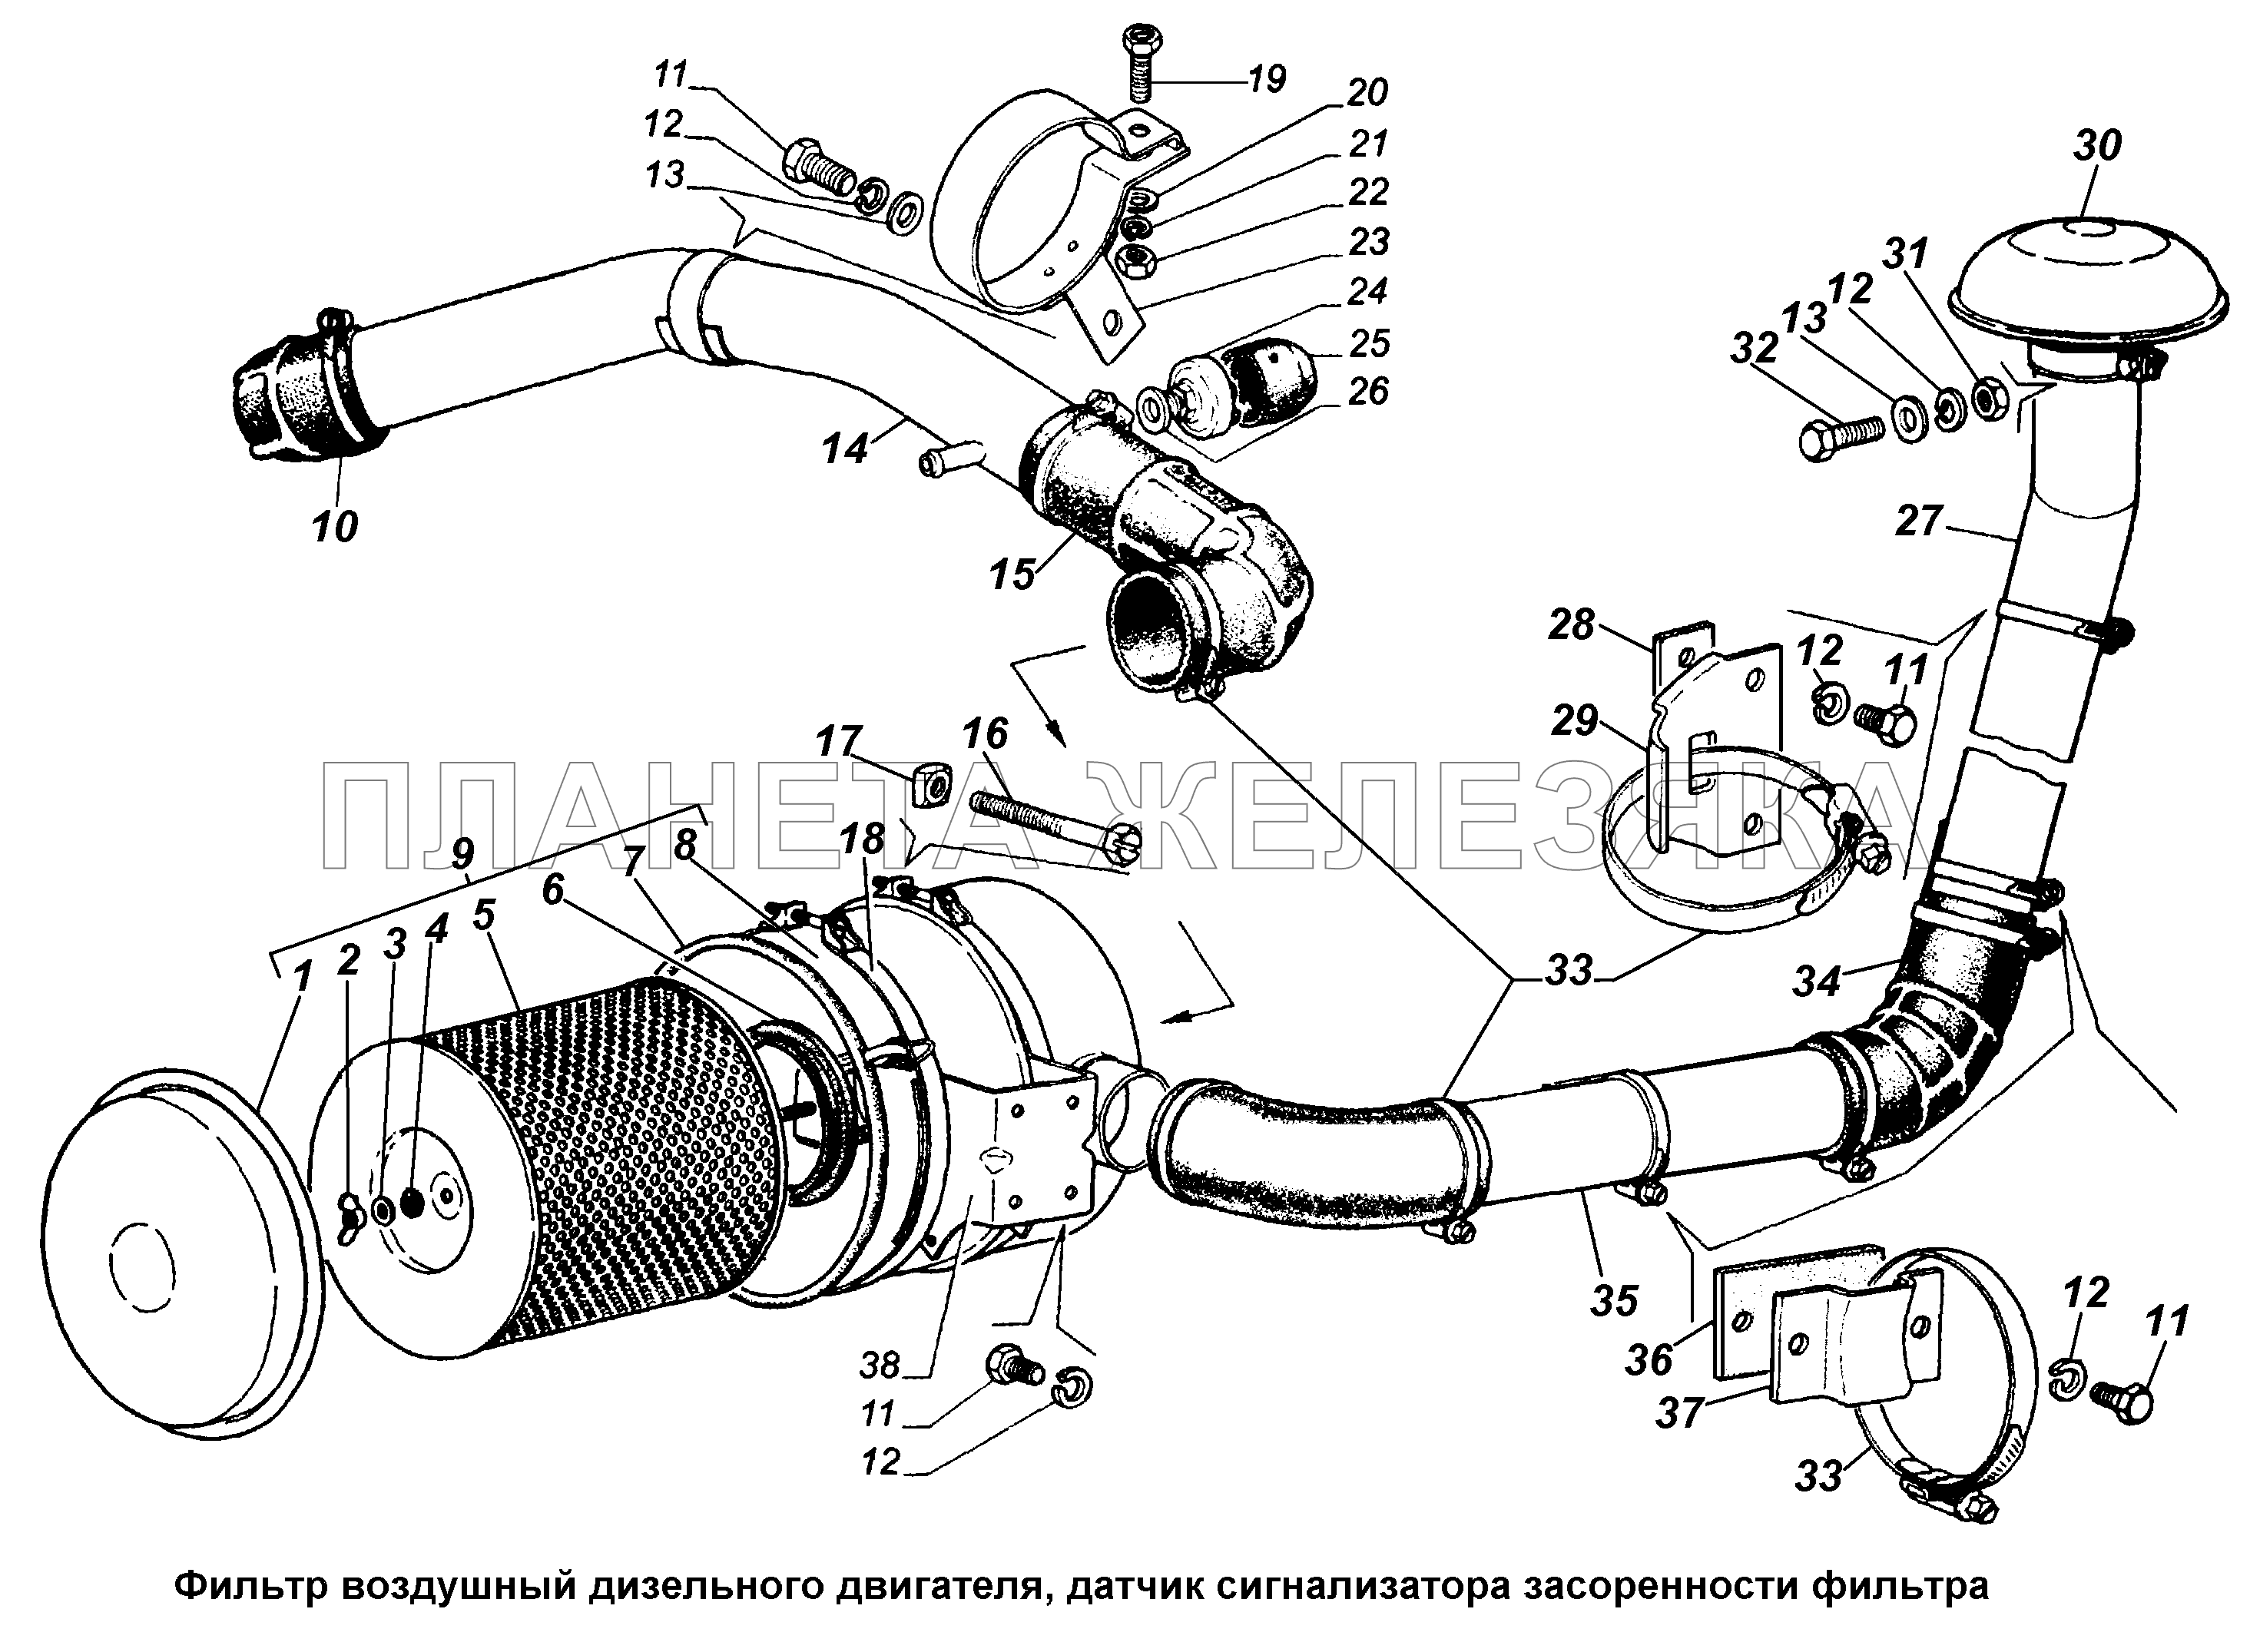 Фильтр воздушный дизельного двигателя ГАЗ-3308